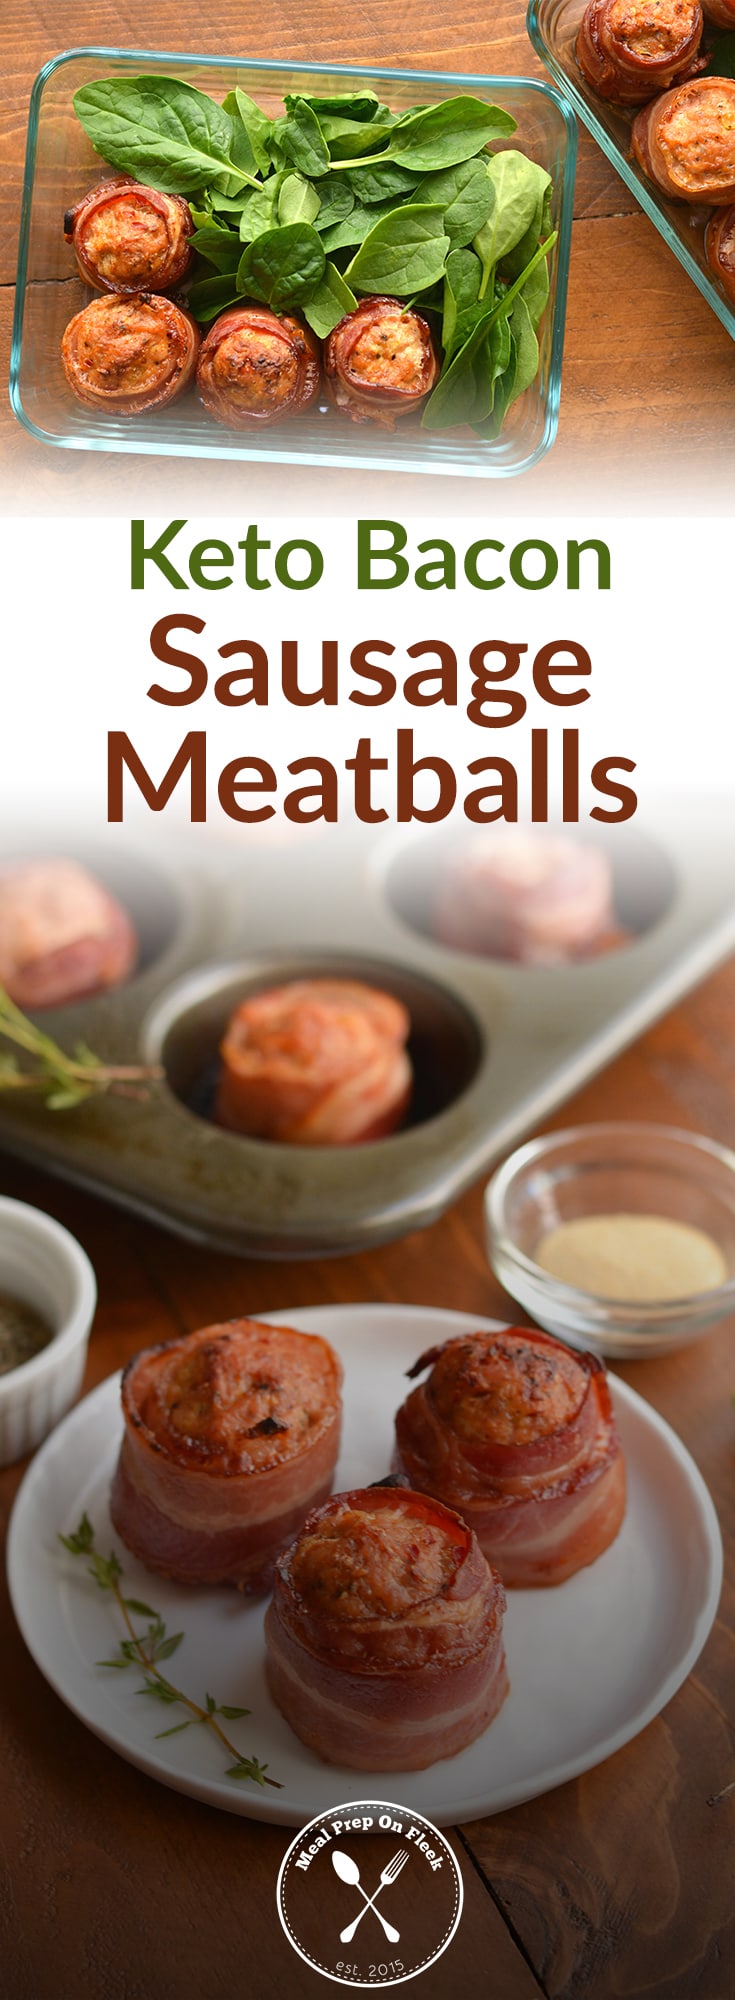 Keto Bacon Sausage Meatballs Recipe